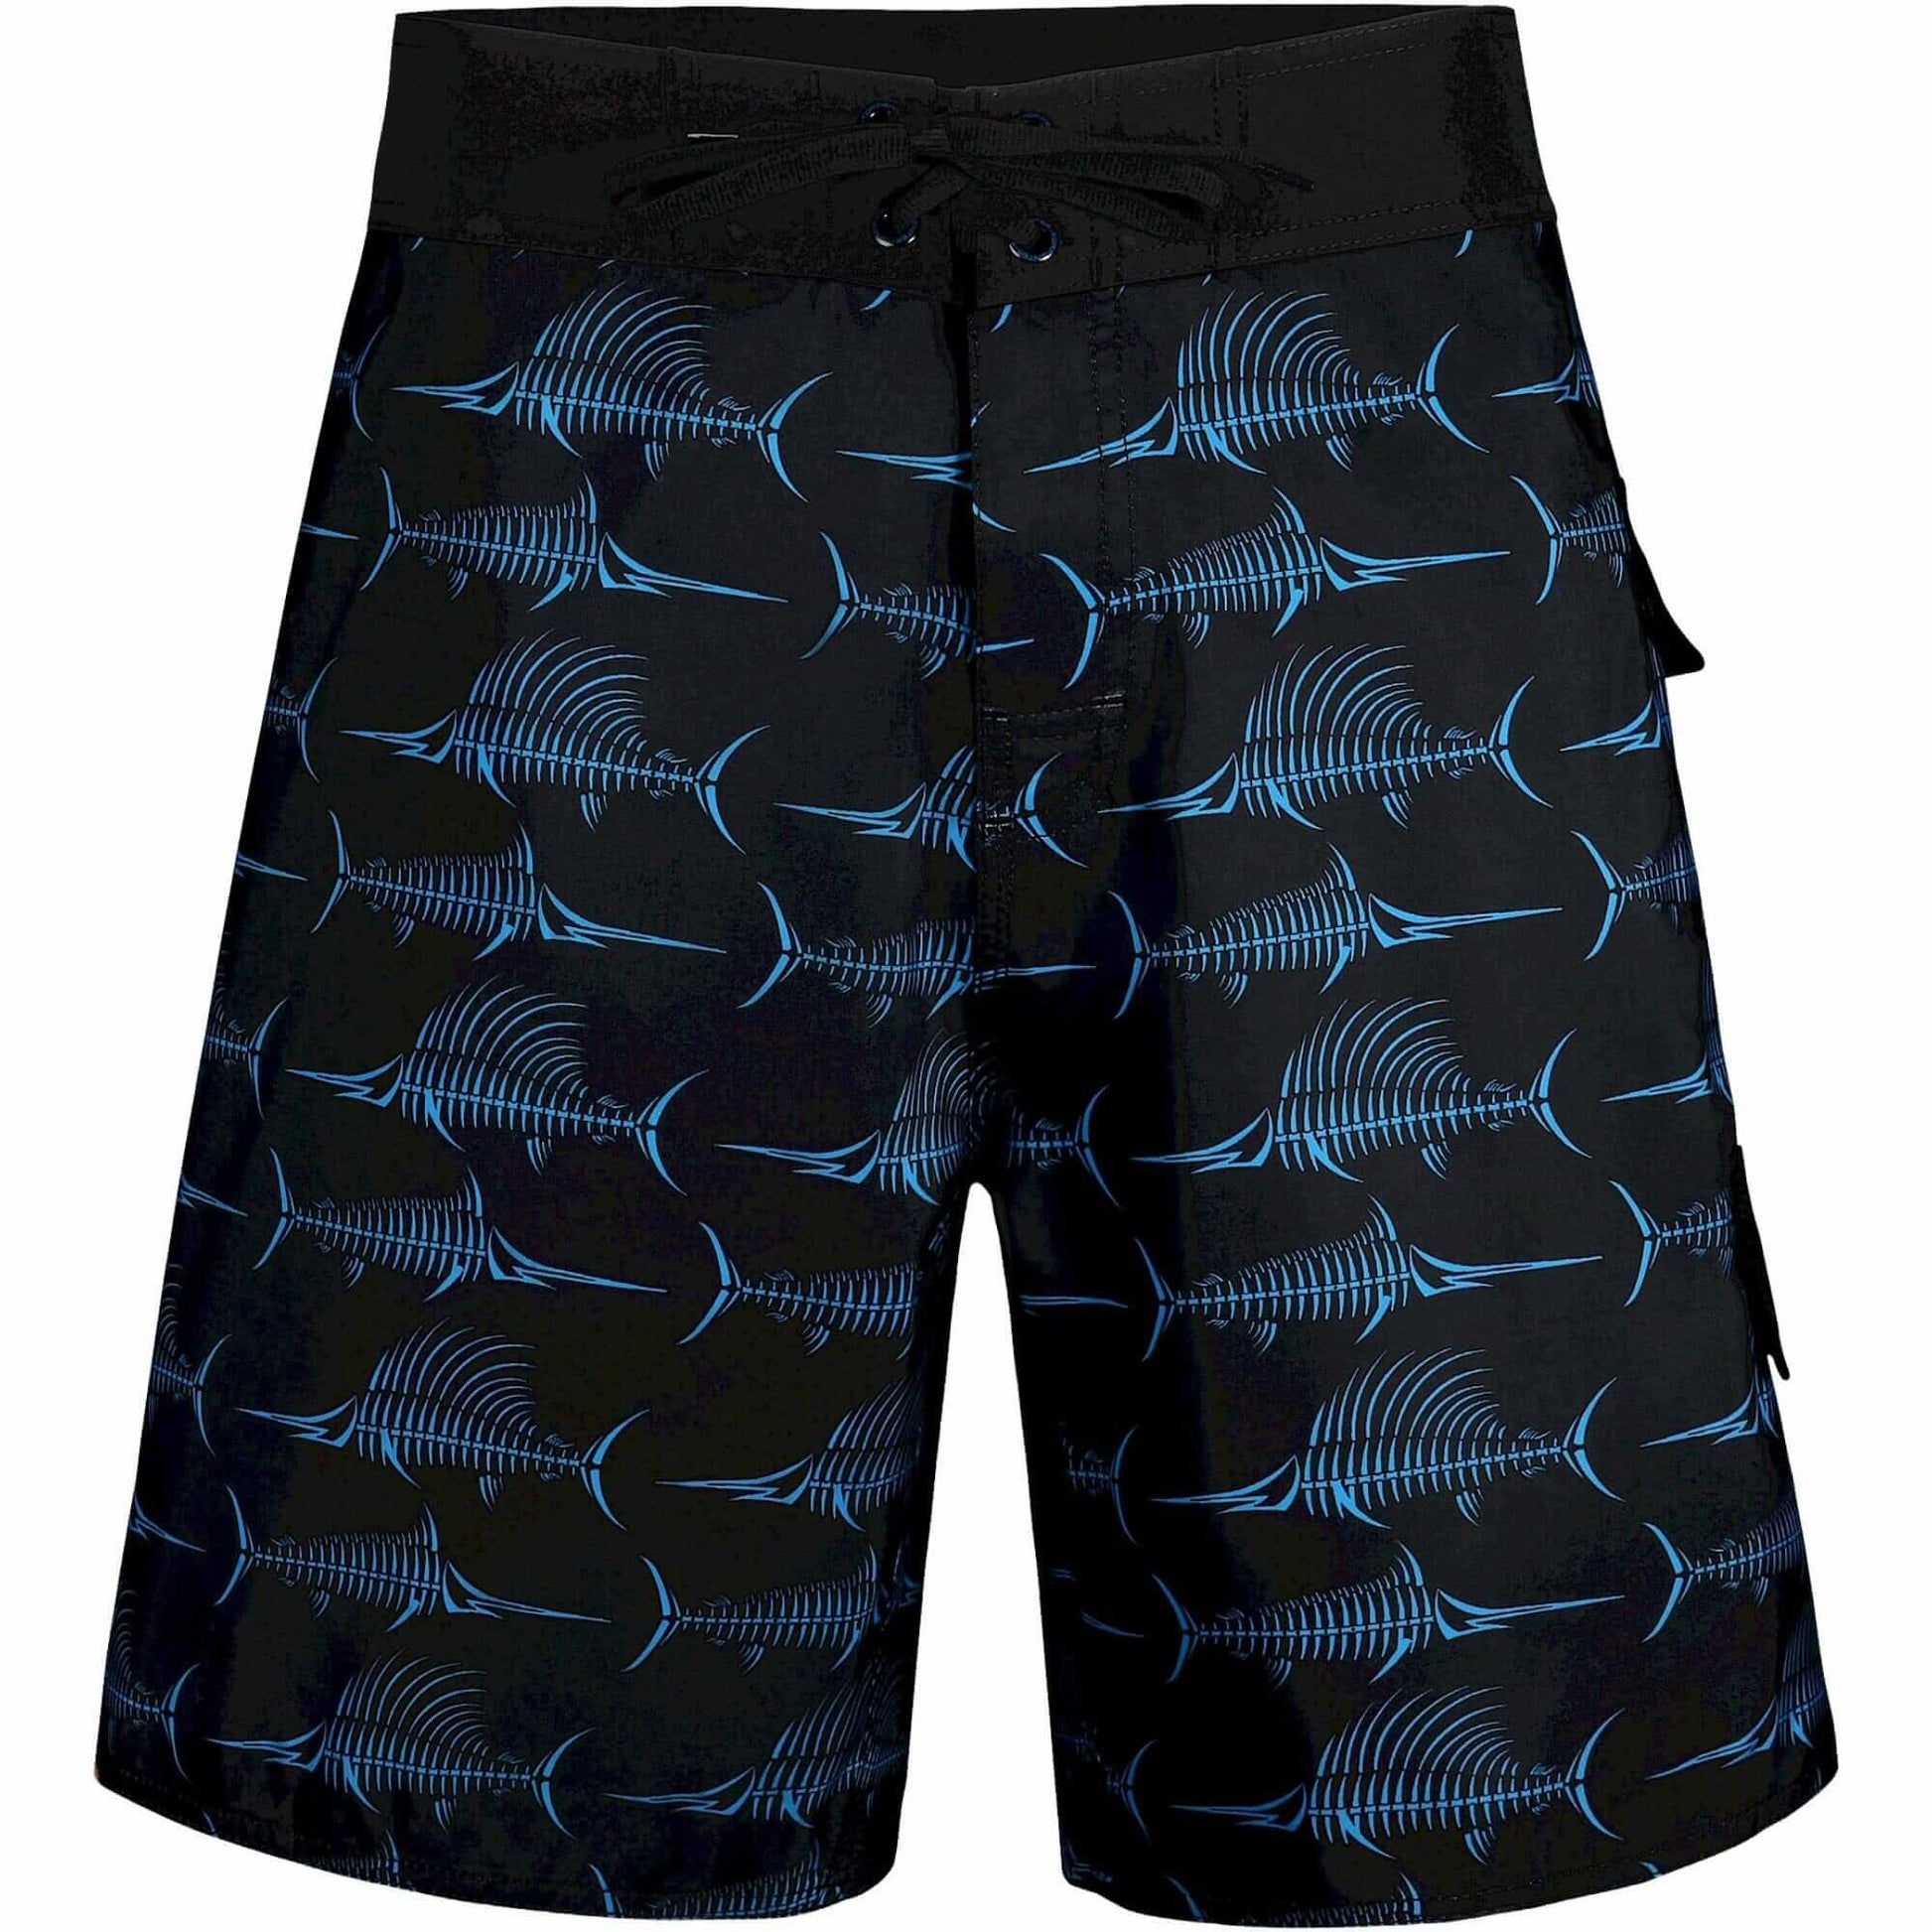 Billfish Bones Board Shorts - Black/Blue Surf Boardshorts Tormenter Ocean 